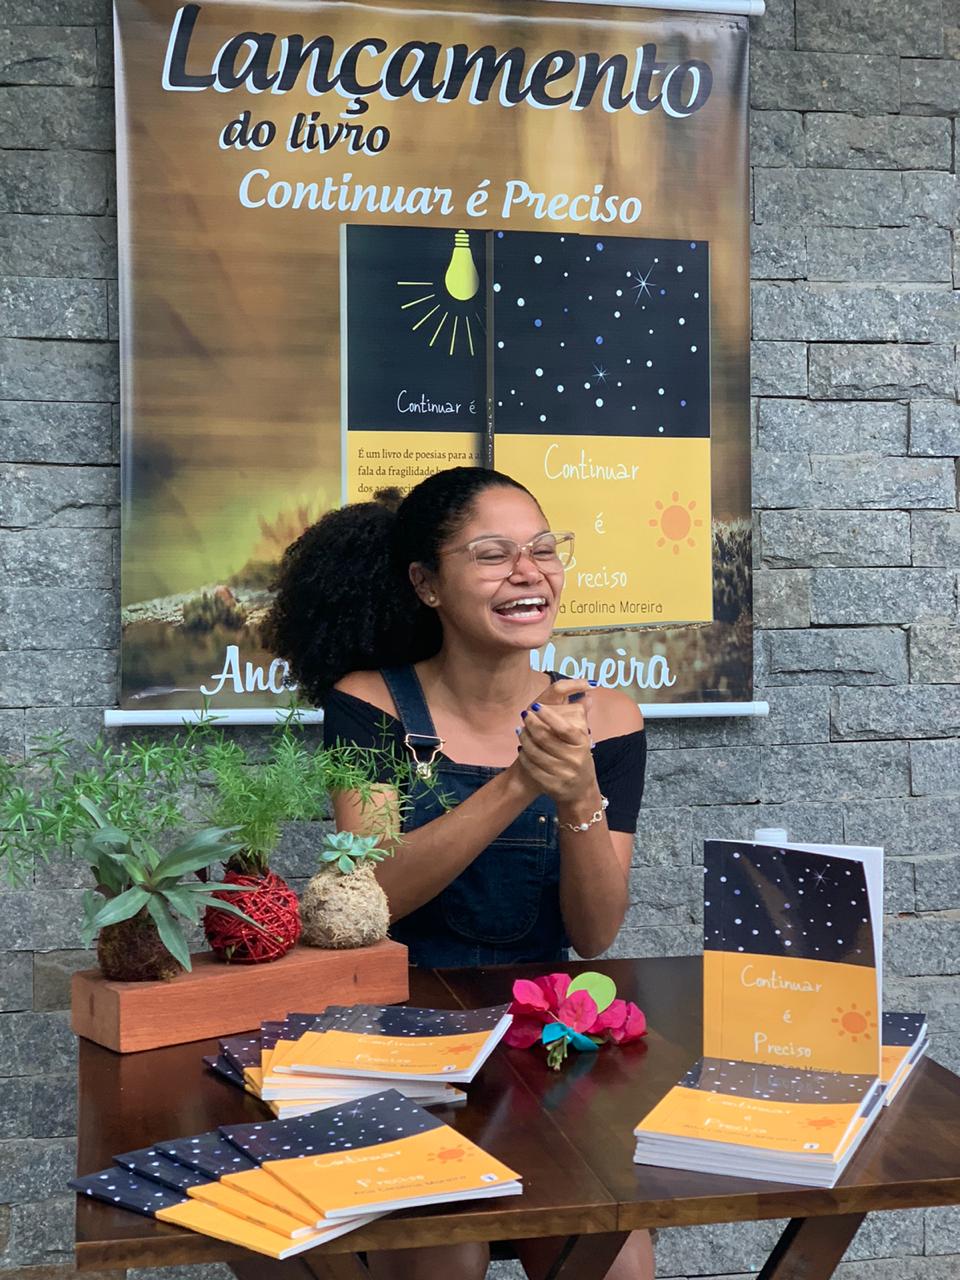 Escritora Ana Carolina Moreira fala sobre seu primeiro livro “Continuar é Preciso”